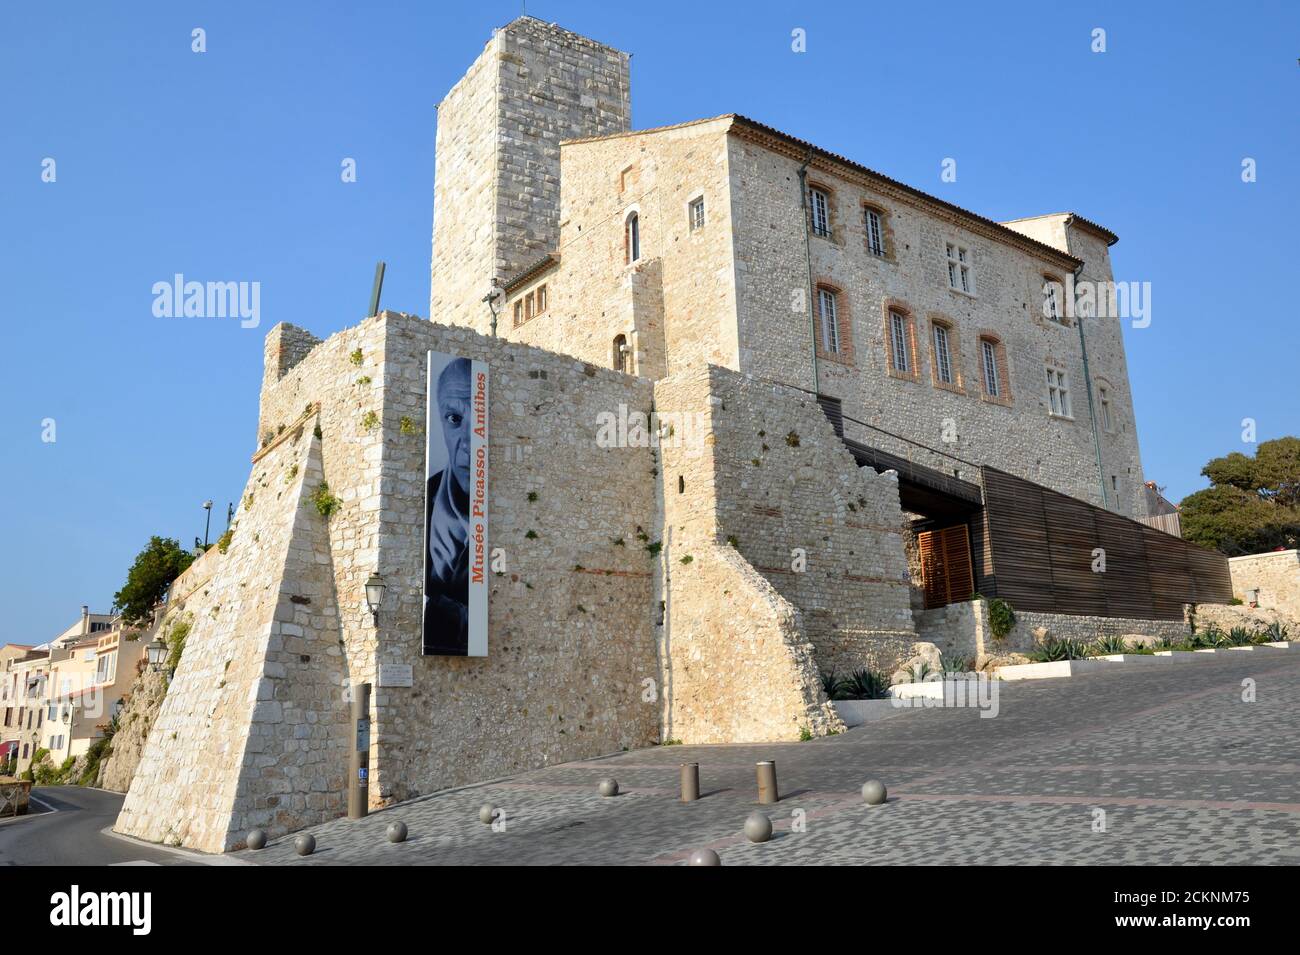 France, côte d'azur, Antibes, le château Grimaldi abrite le musée Picasso où sont exposées des peintures et des céramiques de Pablo Picasso. Banque D'Images